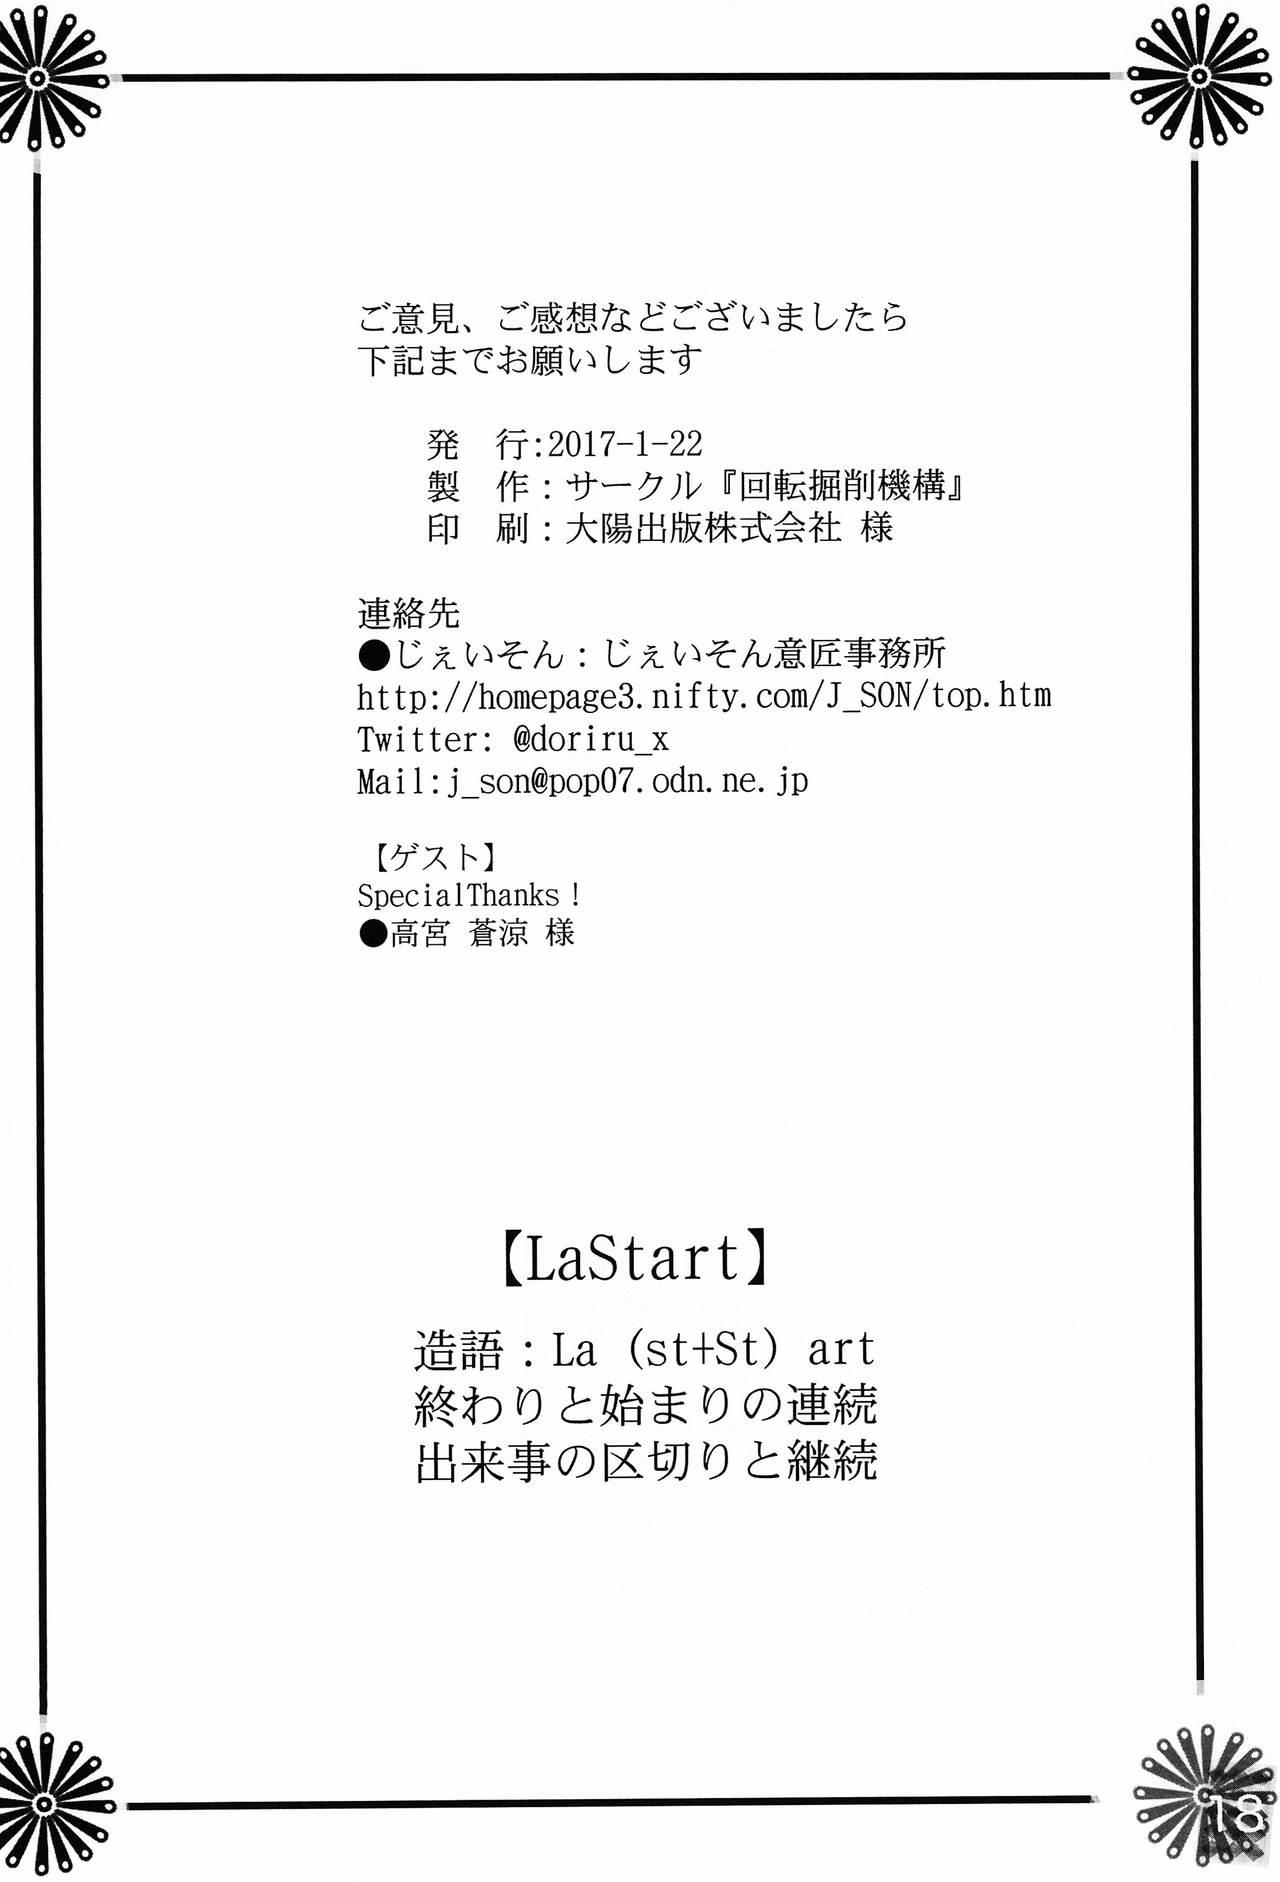 LaStart 18